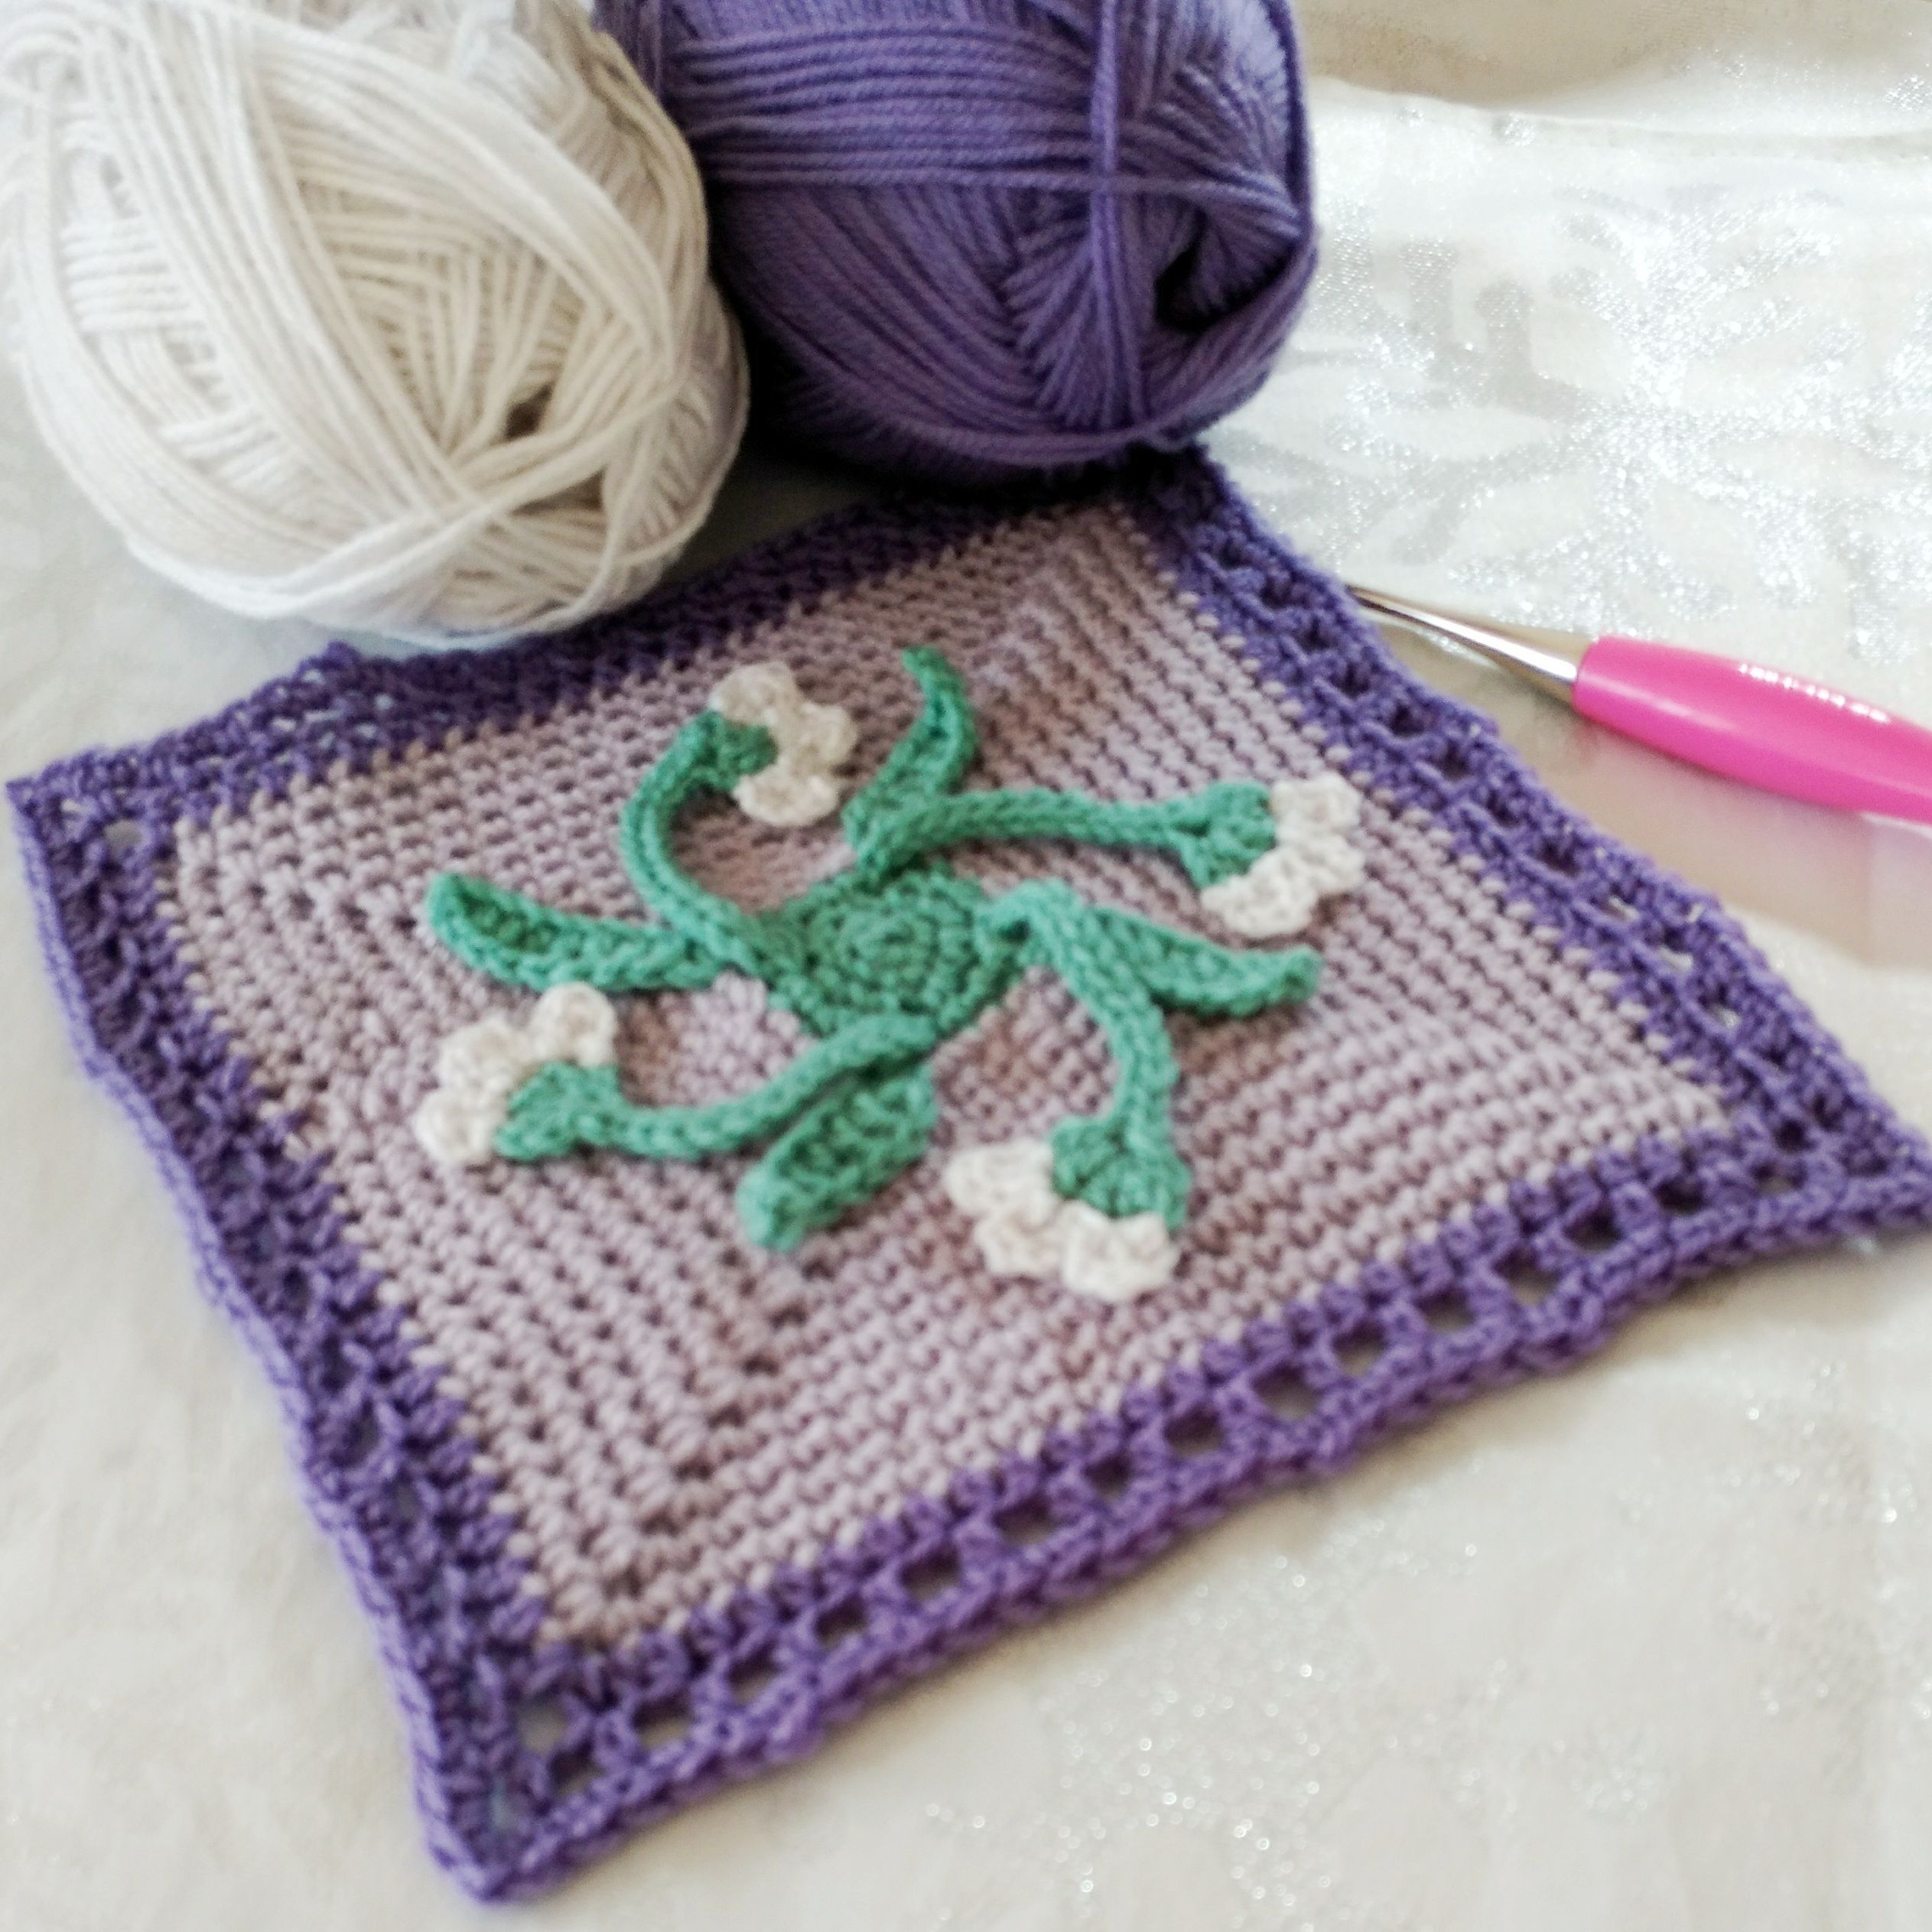 2023 Crochet Blanket - free crochet pattern - February crochet square - Snowdrop Crochet Square - Crochet Cloudberry